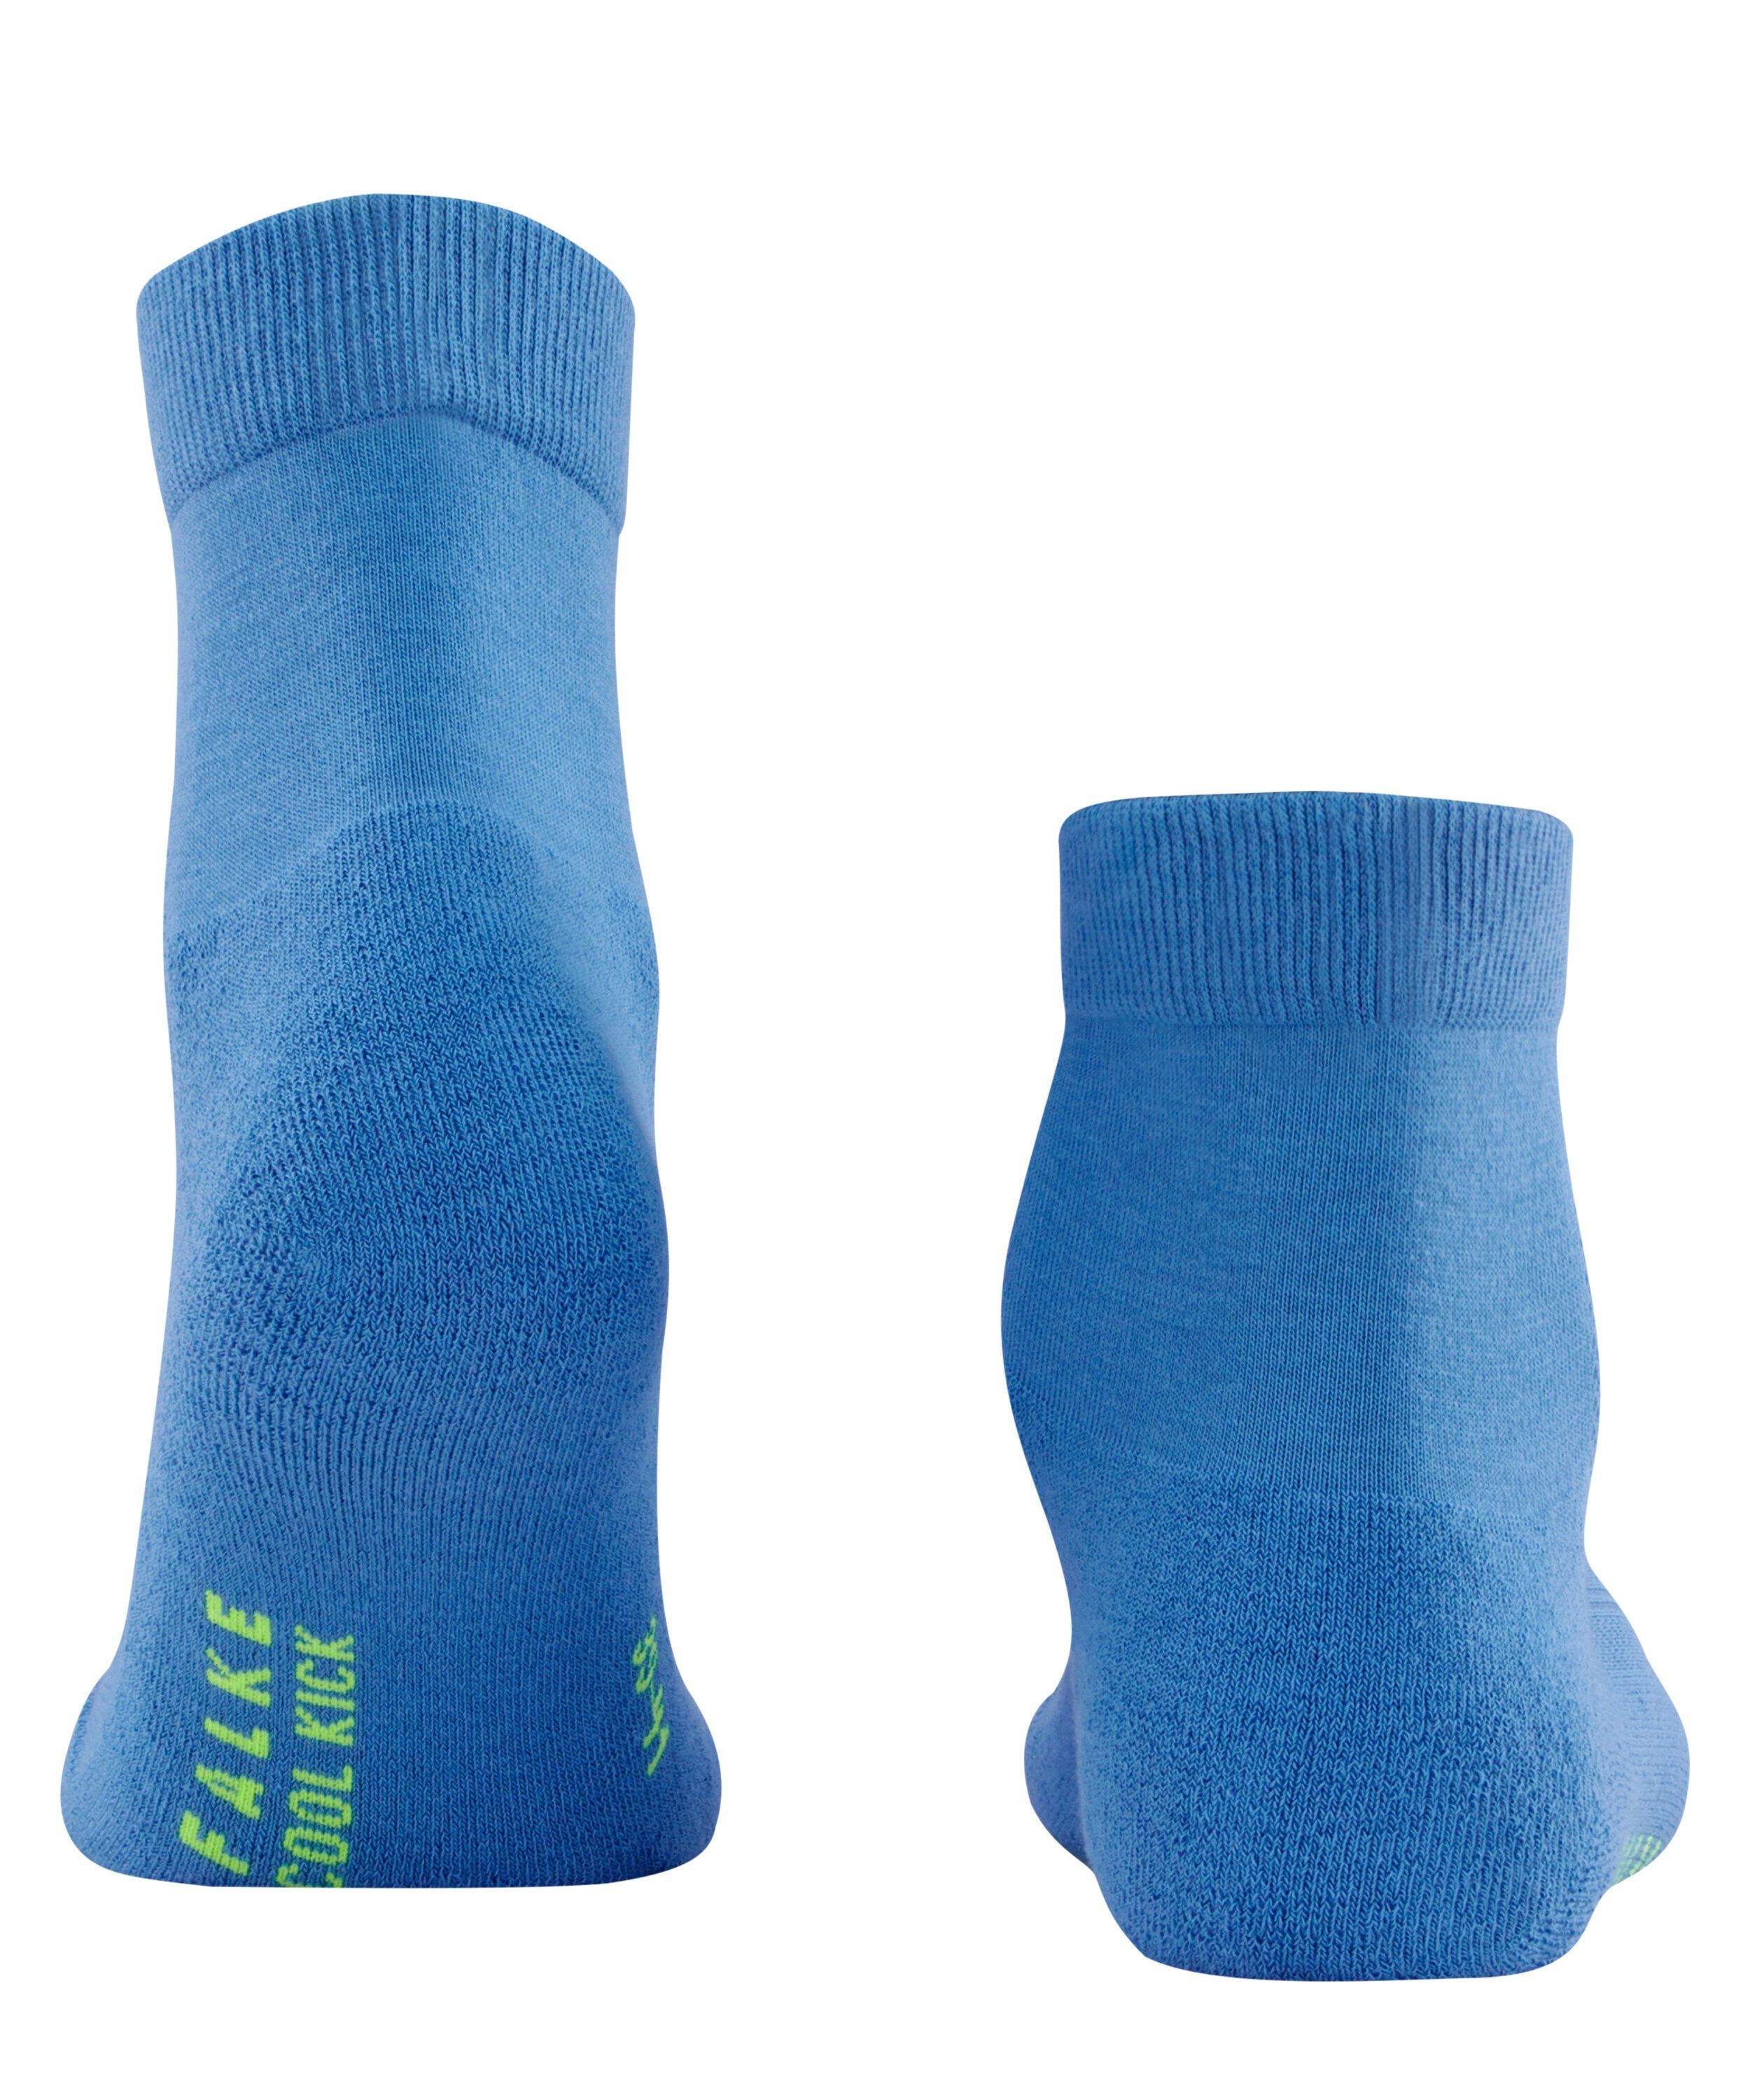 Cool Kick (1-Paar) FALKE Socken blue/grey (6311)